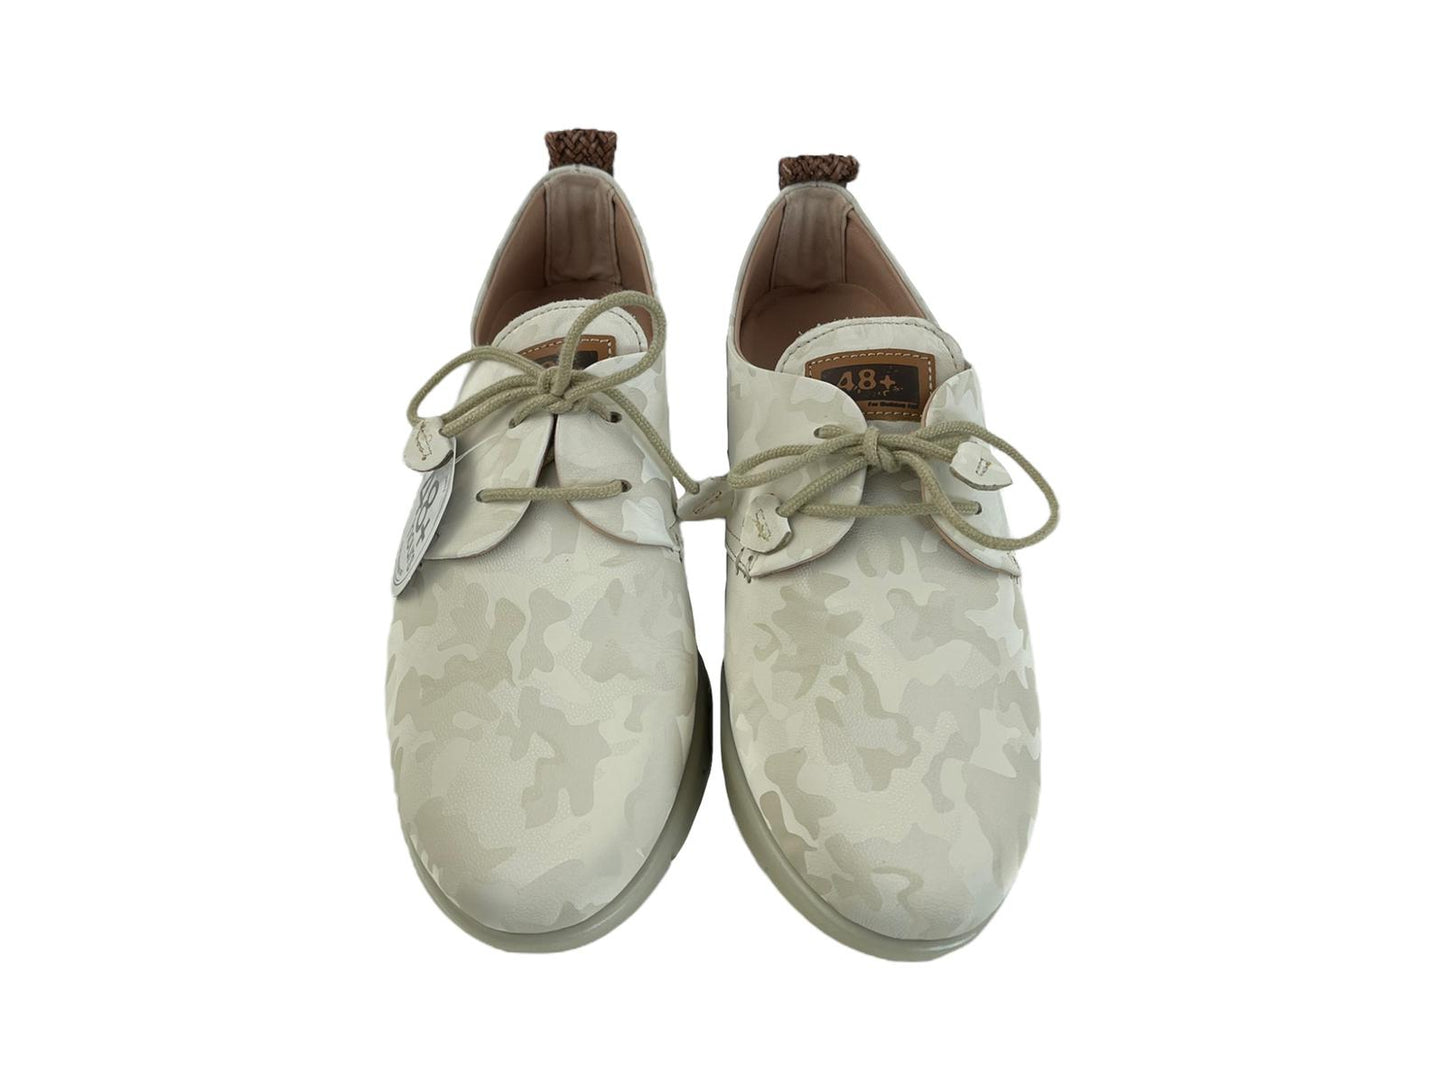 48 Hours | Zapatos mujer estampados blancos detalle corazones París